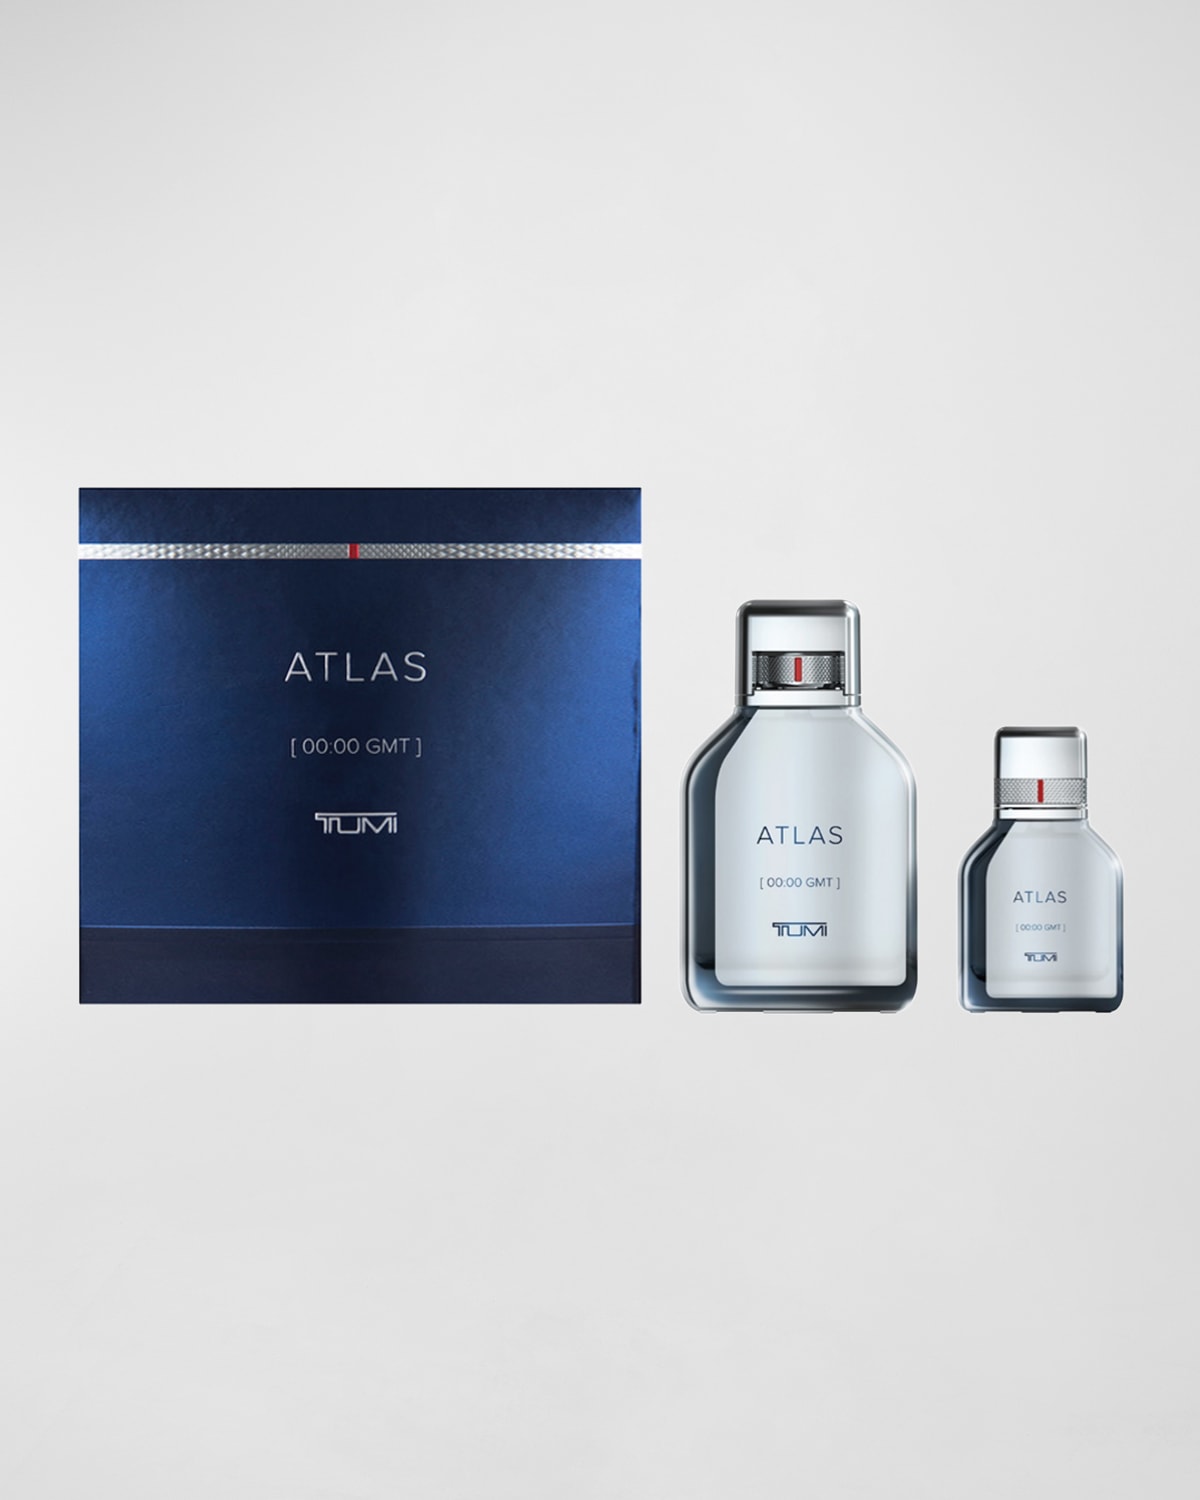 Atlas [00:00 GMT] TUMI For Men Eau de Parfum Gift Set